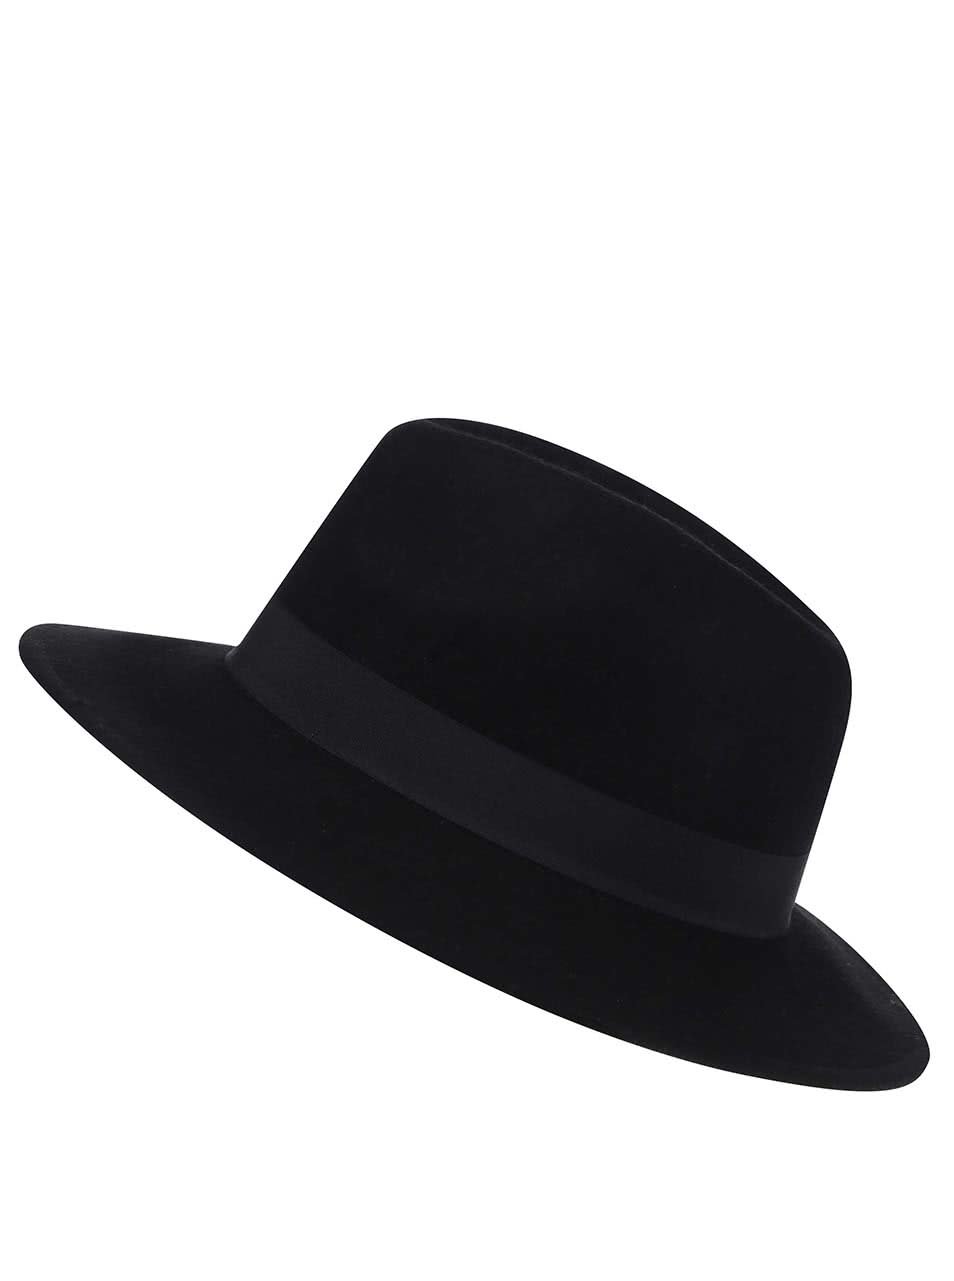 Černý vlněný klobouk Pieces Tul